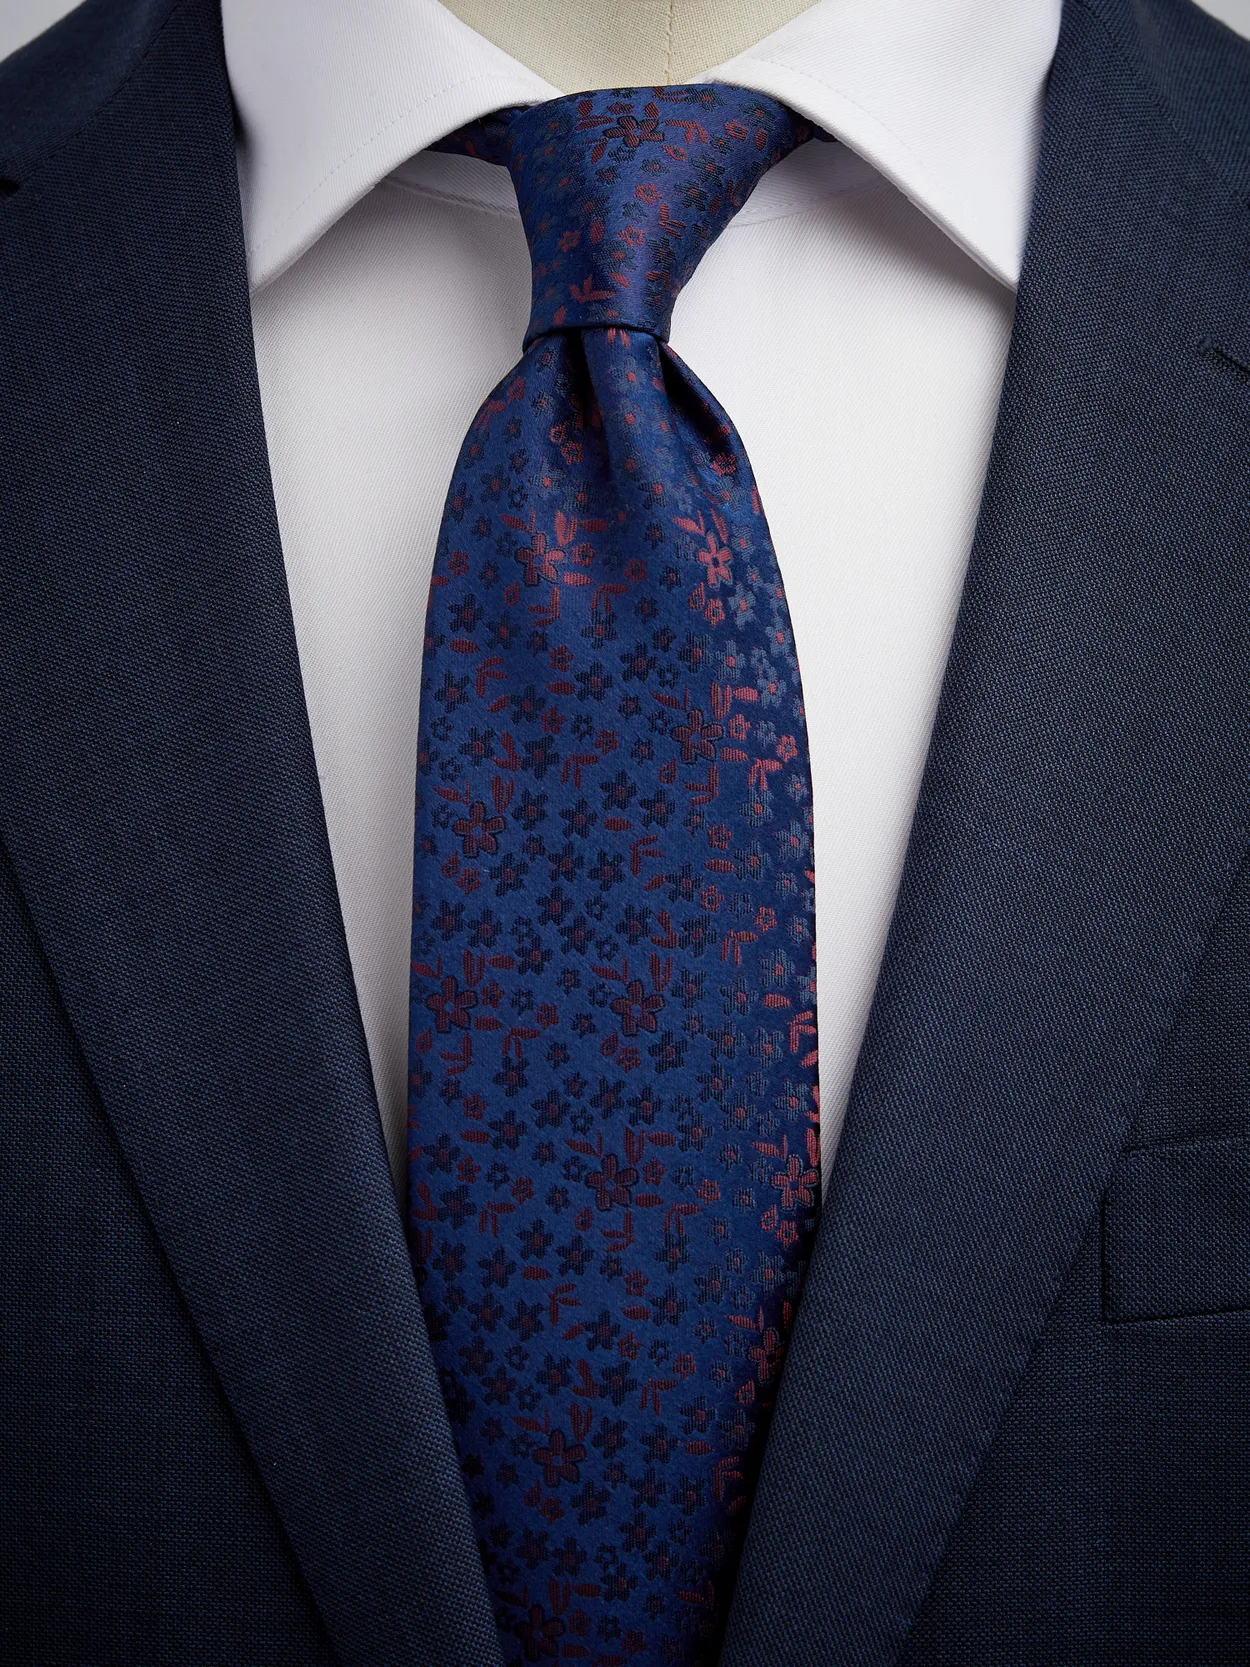 Dark Blue & Red Tie Floral